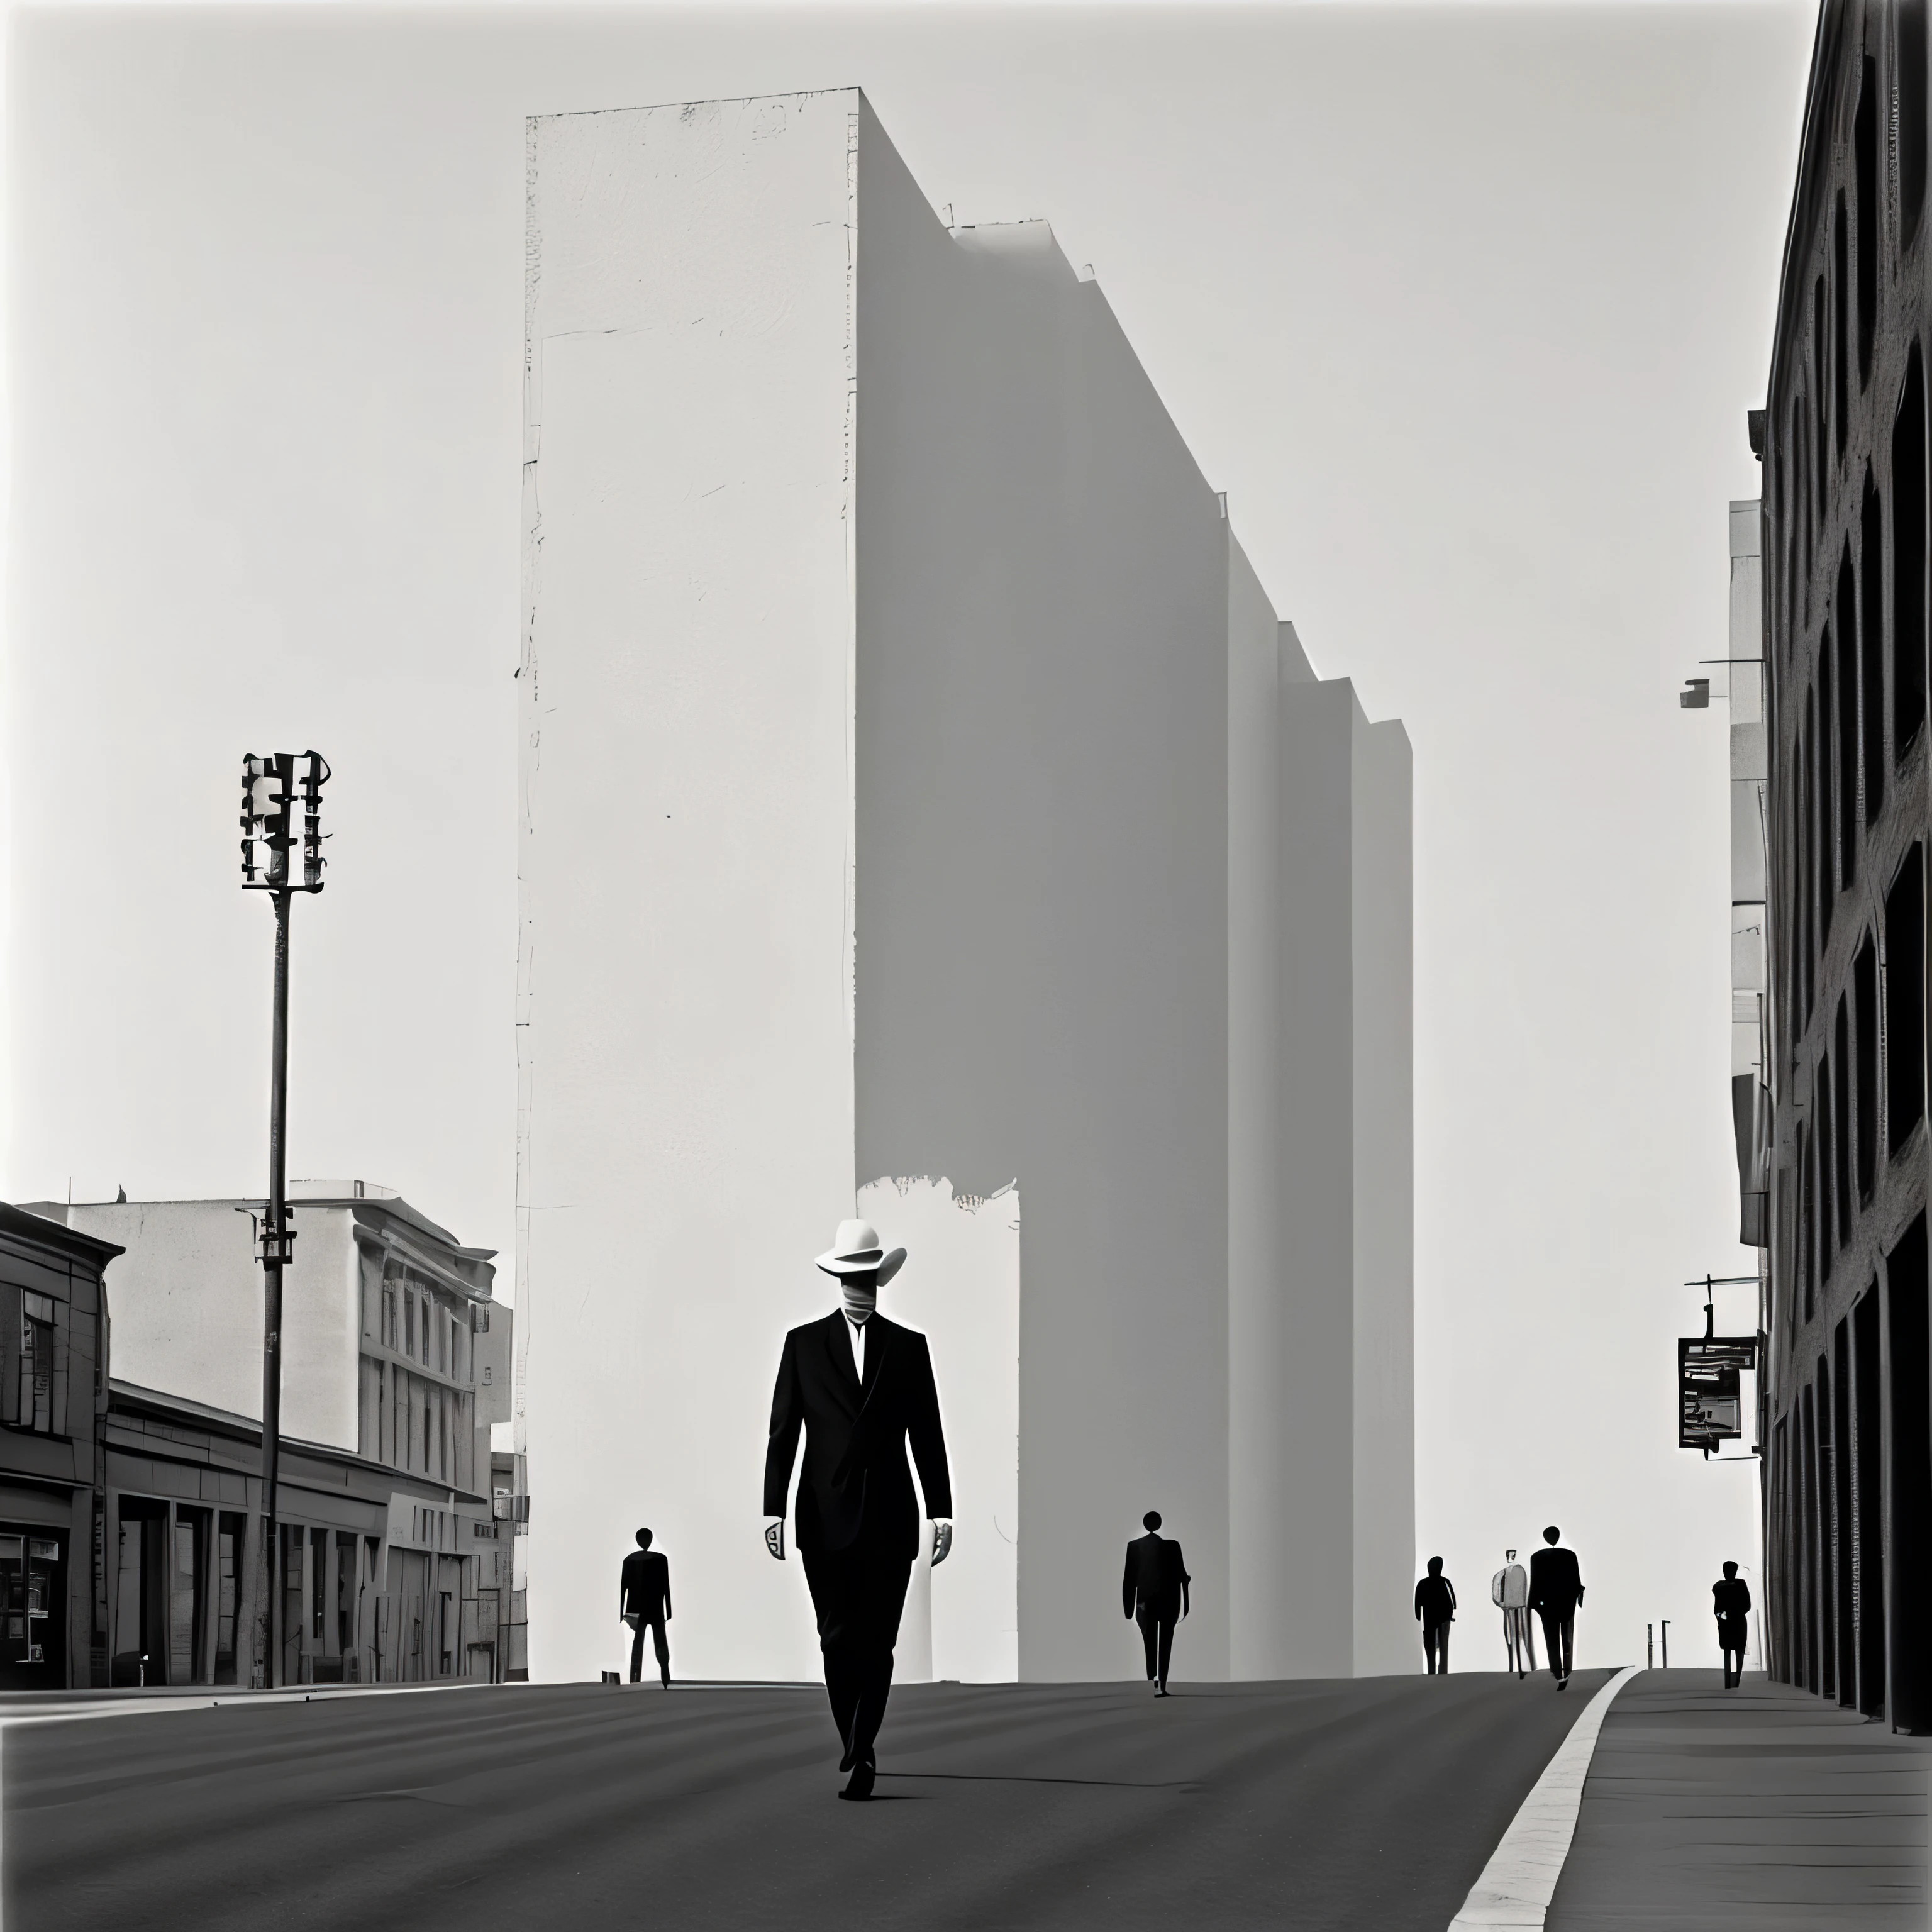 un primer plano de una persona caminando en una ciudad de fondo,ilustracion blanco y negro al estilo de john baldessari